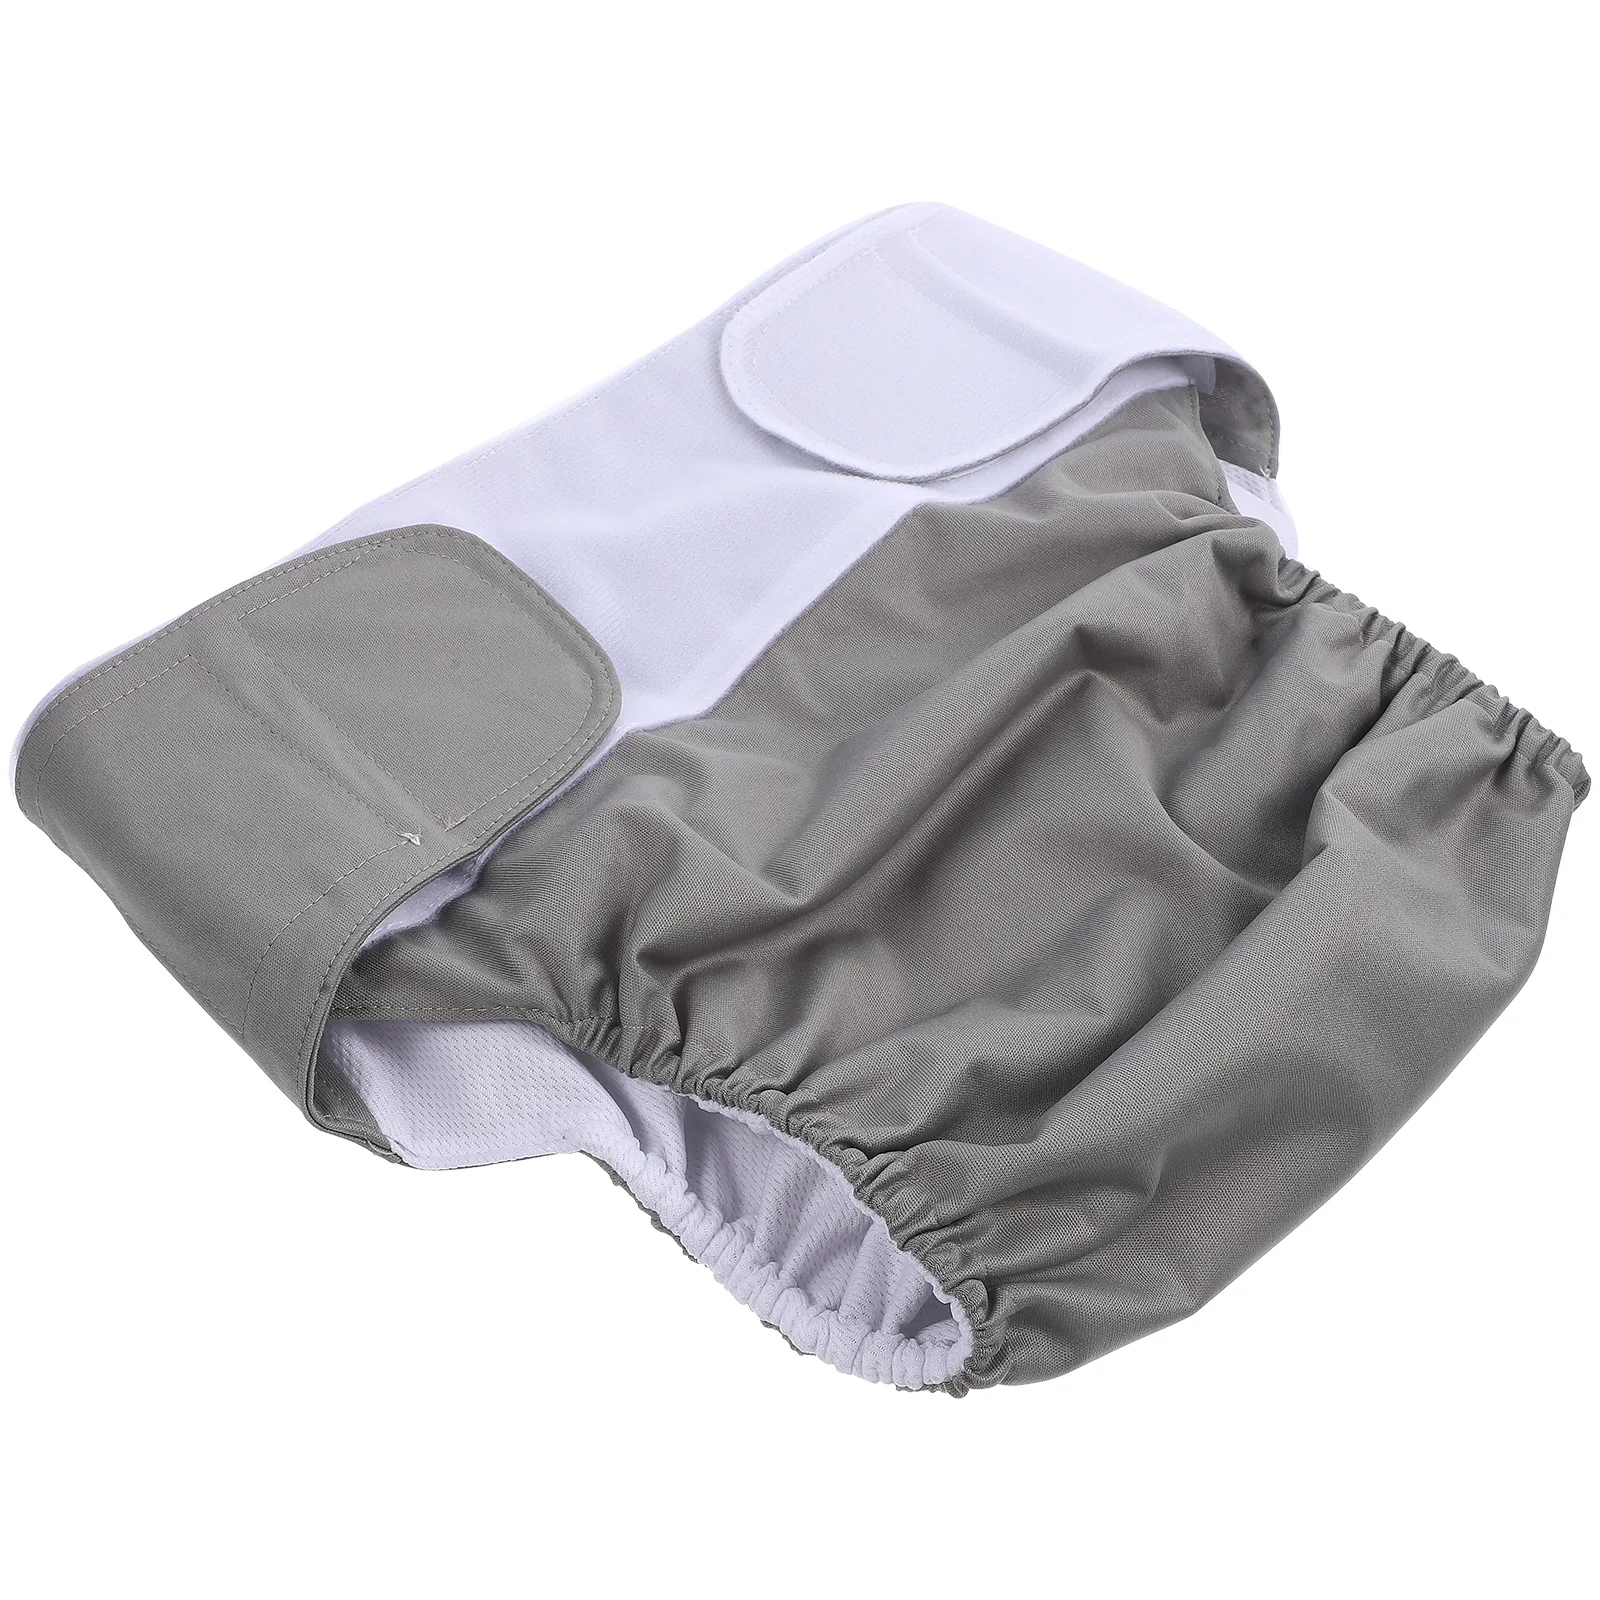 

Milisten MenS Briefs Diaper Cover Adult Pocket Diaper Reusable Washable Adult Cloth Diaper Adult Nappy Absorbent Diaper